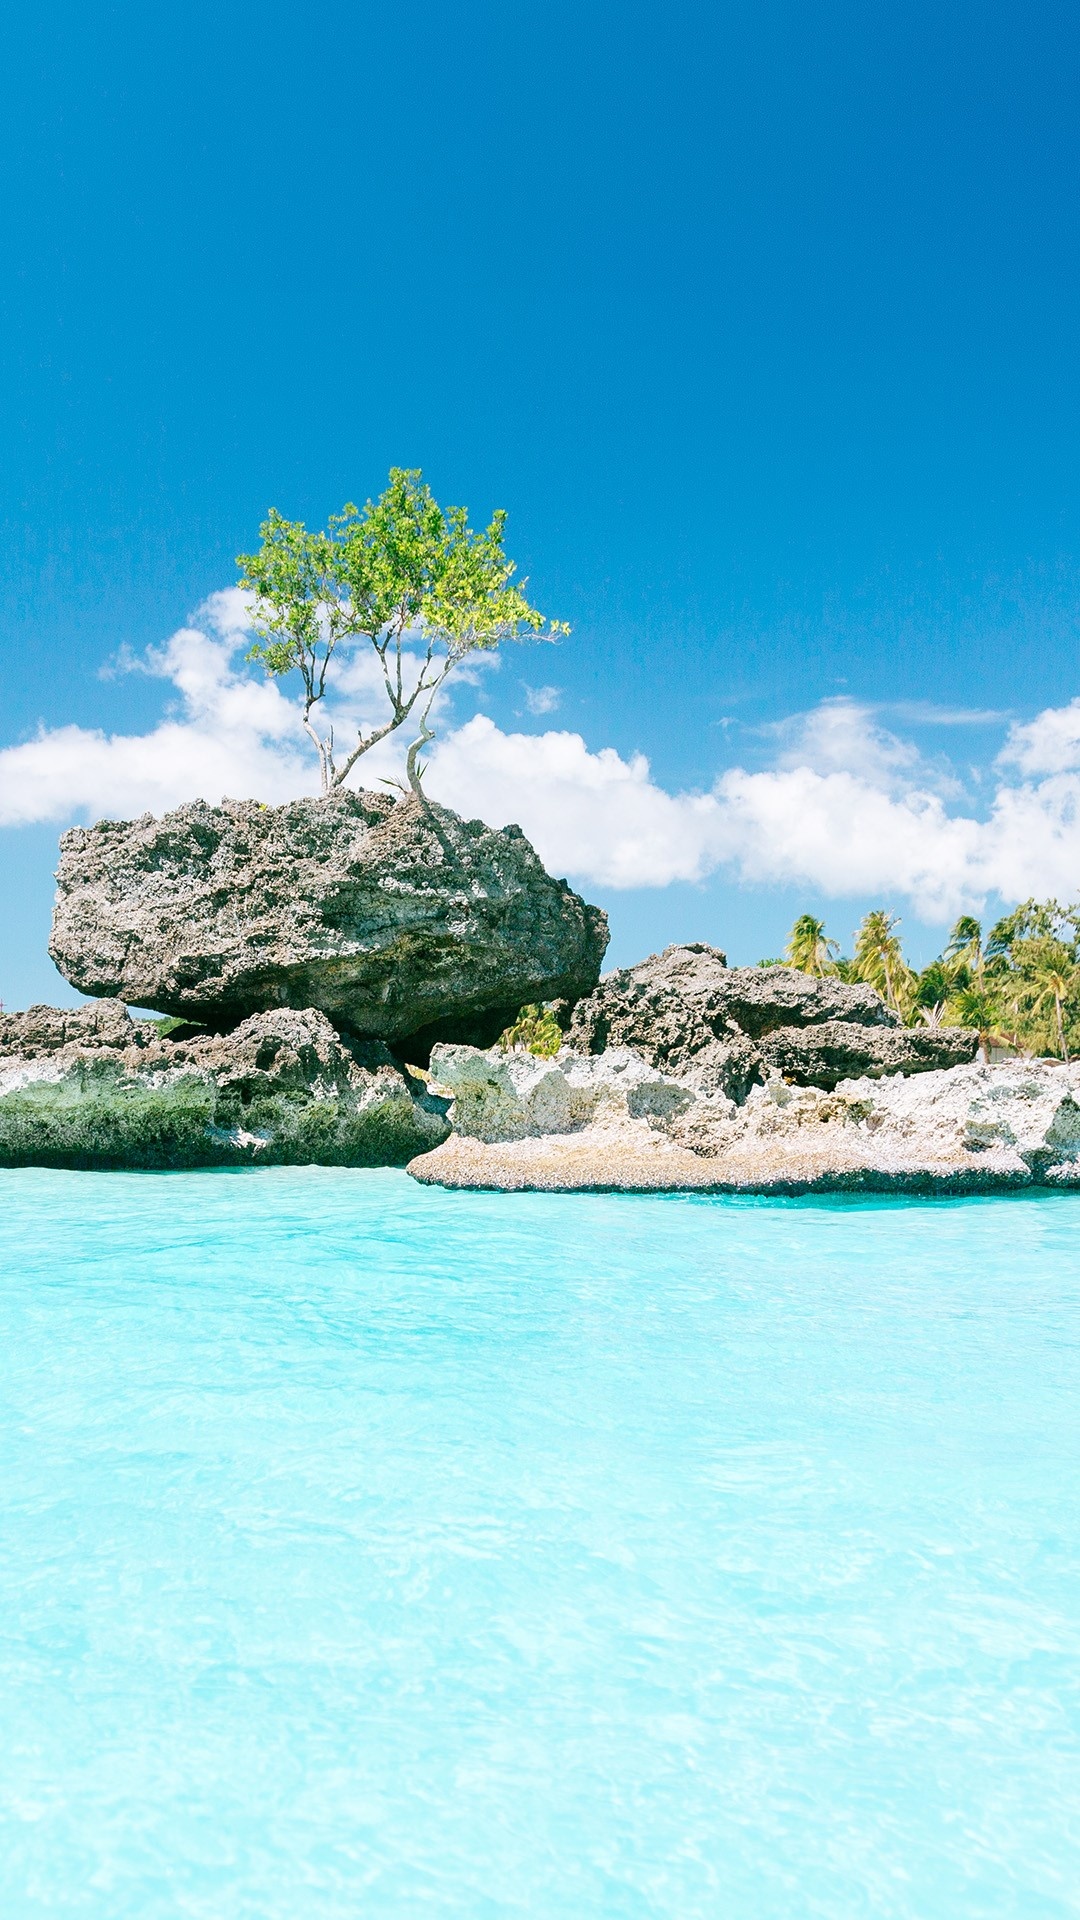 Willy's Rock view, White beach, Philippine spotlight, Island wonder, 1080x1920 Full HD Phone